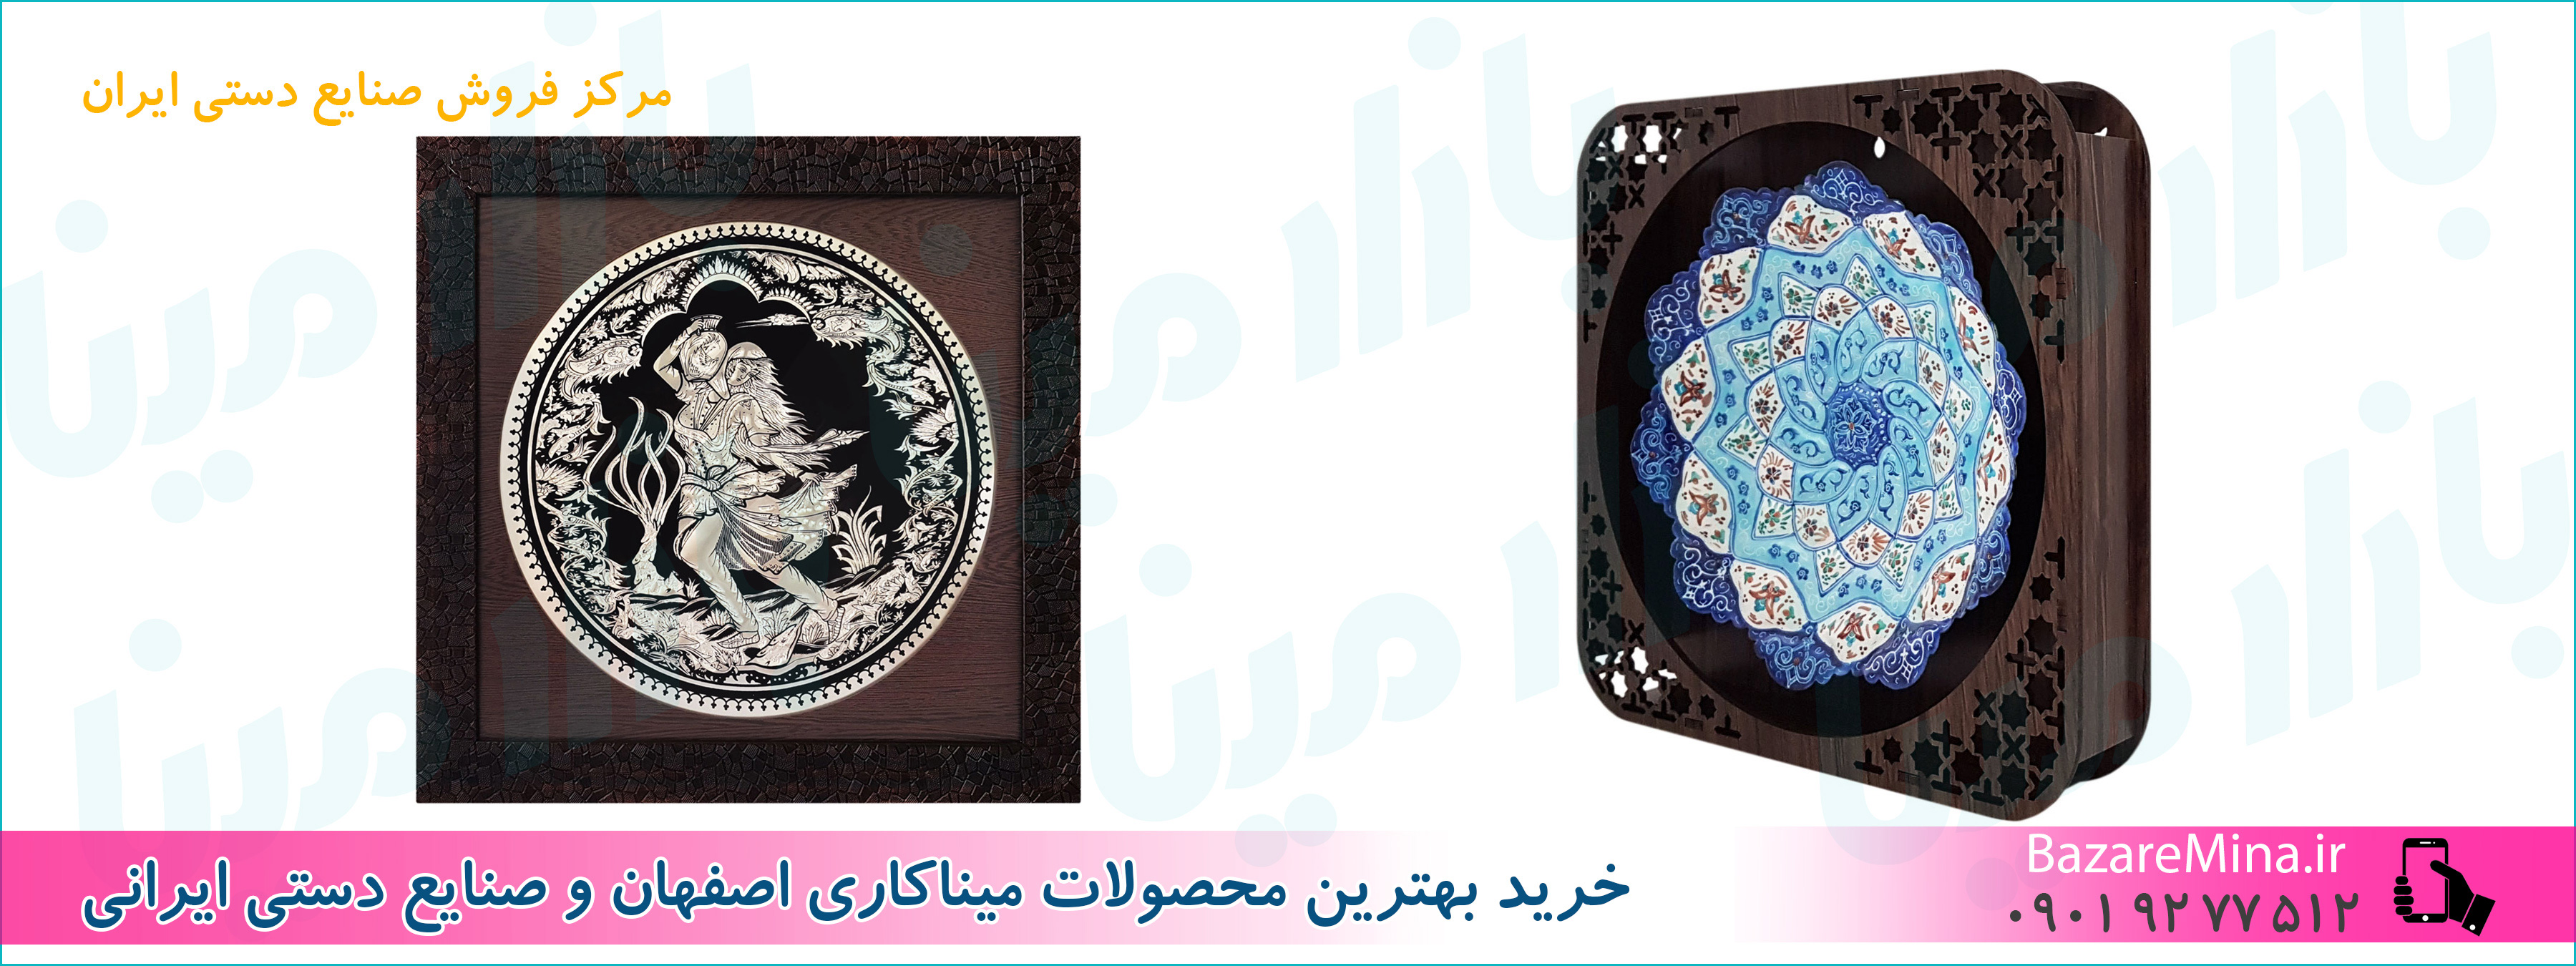 خرید صنایع دستی اصفهان در تهران